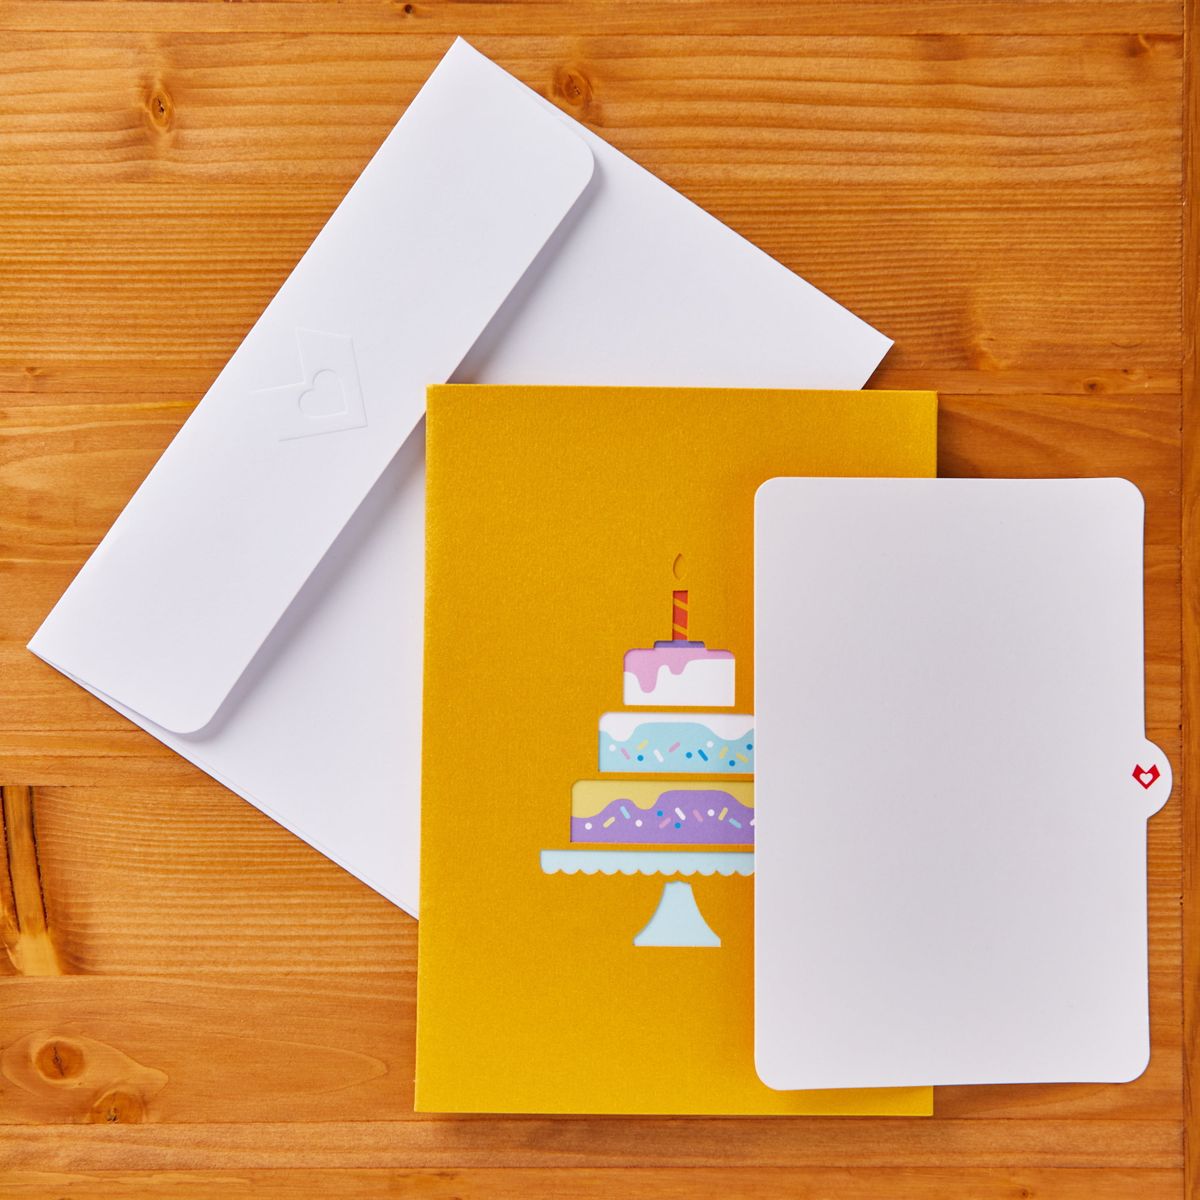 [送料無料] Lovepop Happy Birthday Cake Pop Up 3D グリーティングカード、5インチ x 7インチ、封筒付き [海外通販] Lovepop Happy Birthday Cake Pop Up 3D Greeting Card, 5" x 7", Envelope Included